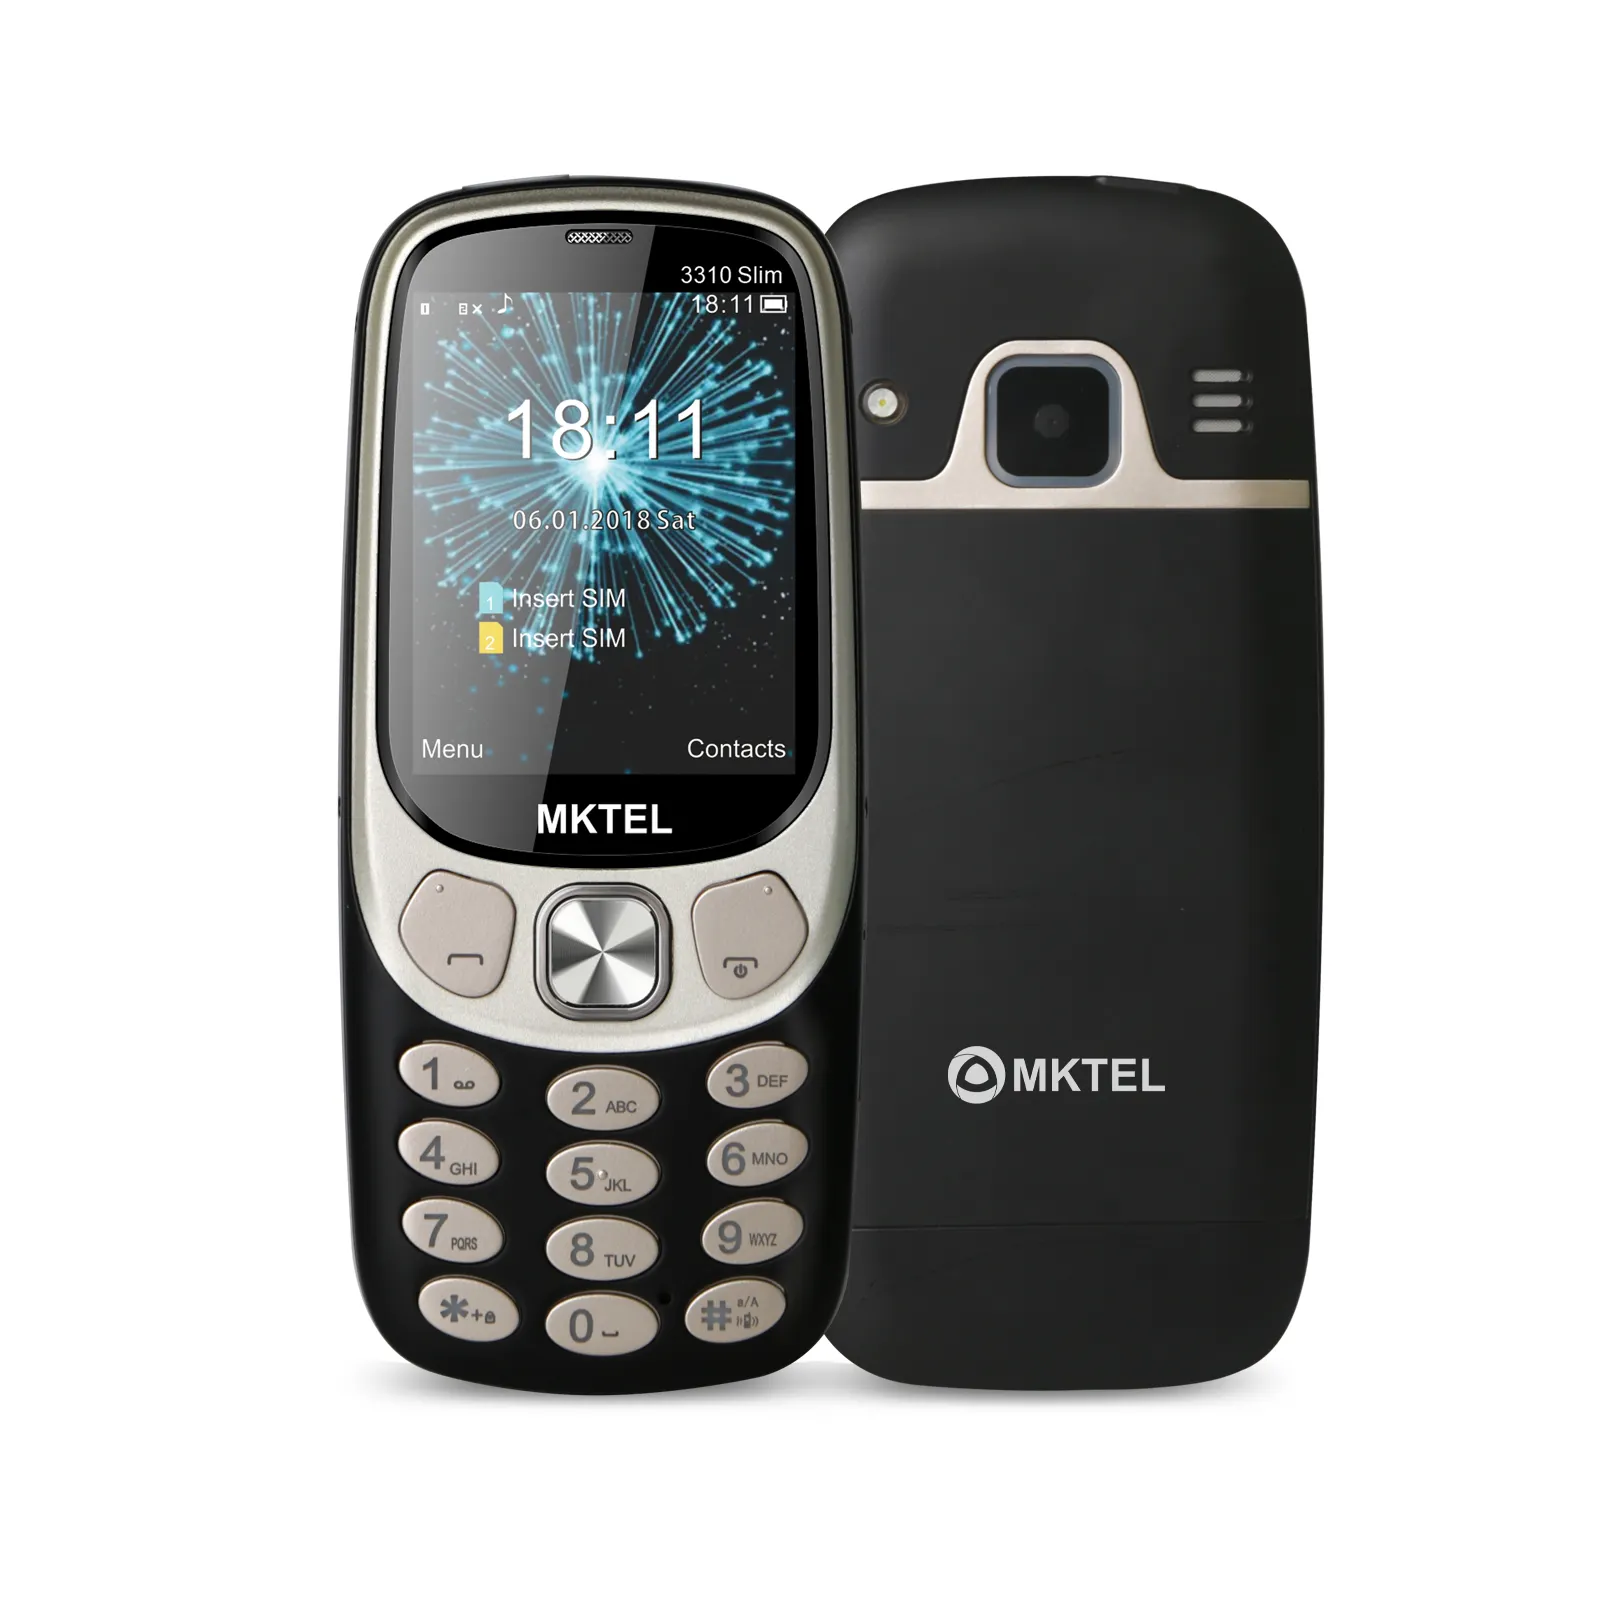 Kalite fabrika Metal konut tuş takımı bar telefon 2.4 inç 2G GSM çift SIM cep telefonu Nokia 3310 cep telefonu için benzer tasarım